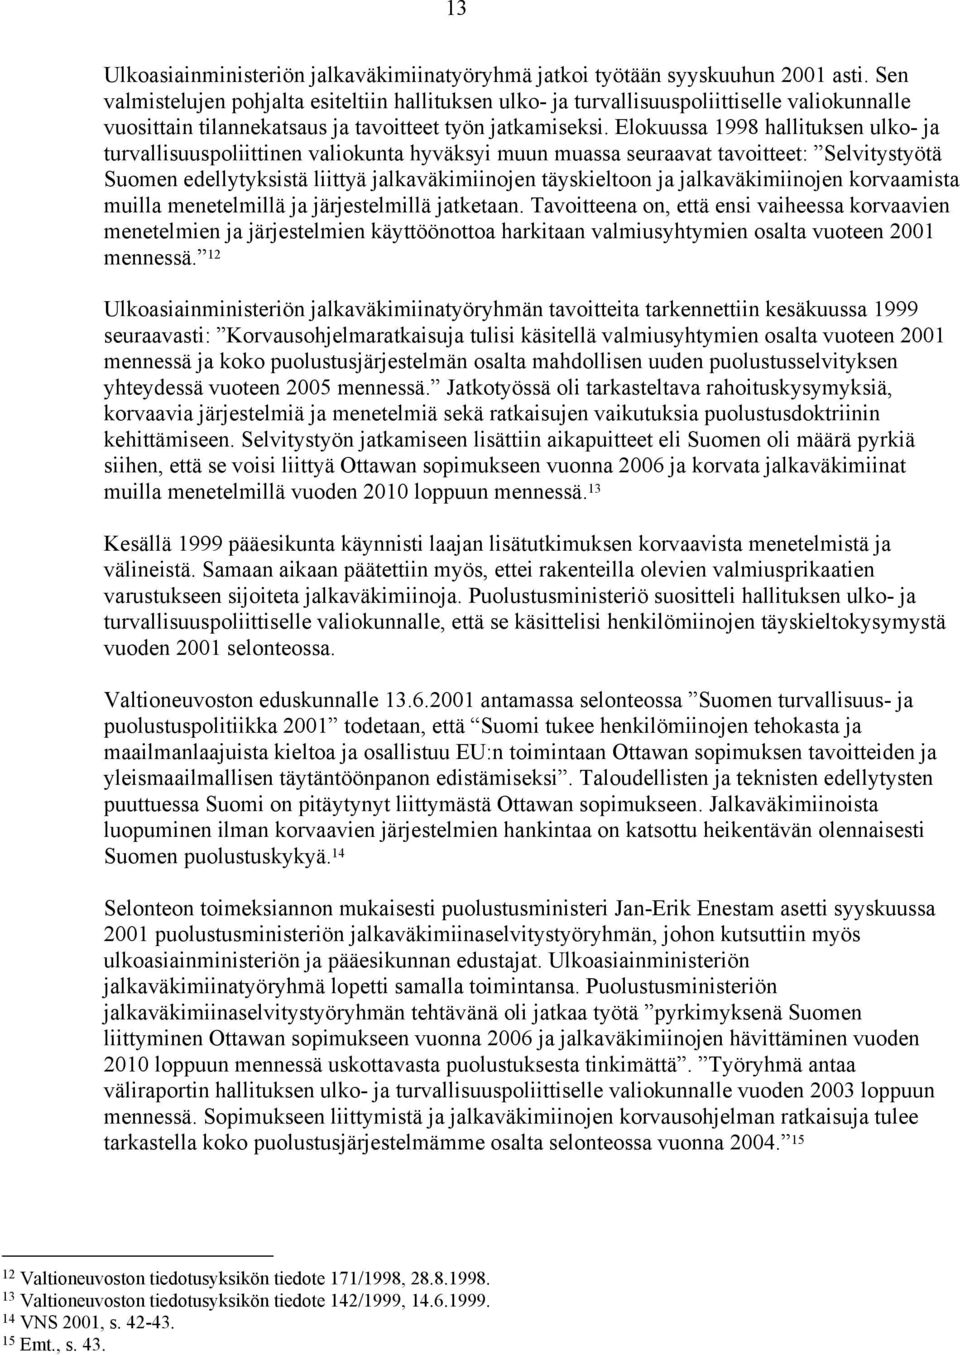 Elokuussa 1998 hallituksen ulko- ja turvallisuuspoliittinen valiokunta hyväksyi muun muassa seuraavat tavoitteet: Selvitystyötä Suomen edellytyksistä liittyä jalkaväkimiinojen täyskieltoon ja